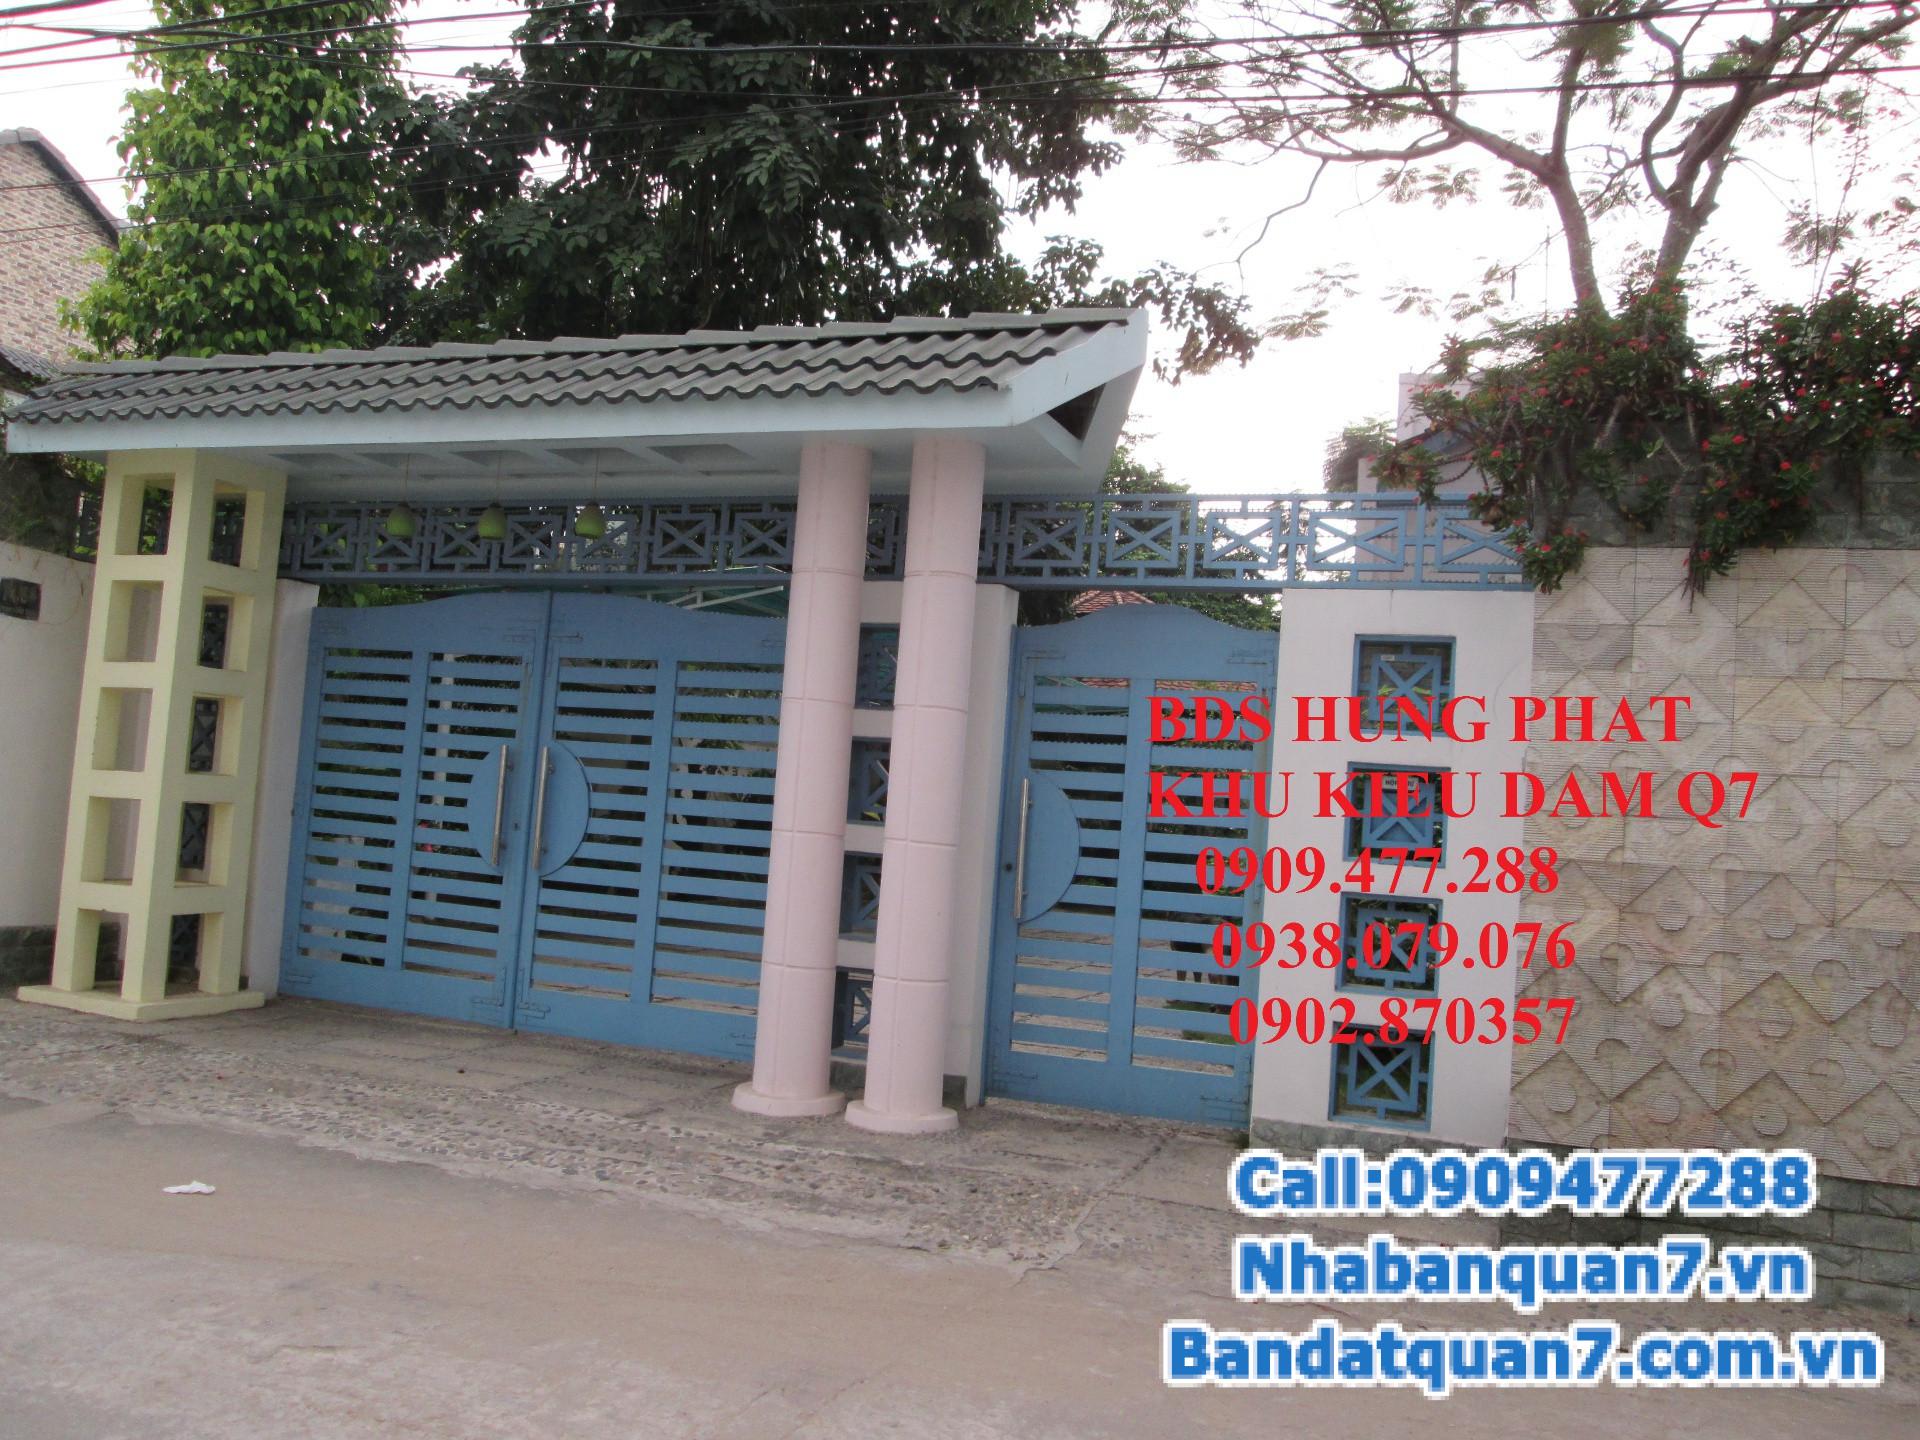 Cần bán gấp nhà biệt thự Vườn KDC Kiều Đàm, Phường Tân Hưng, Quận 7, TP.HCM.